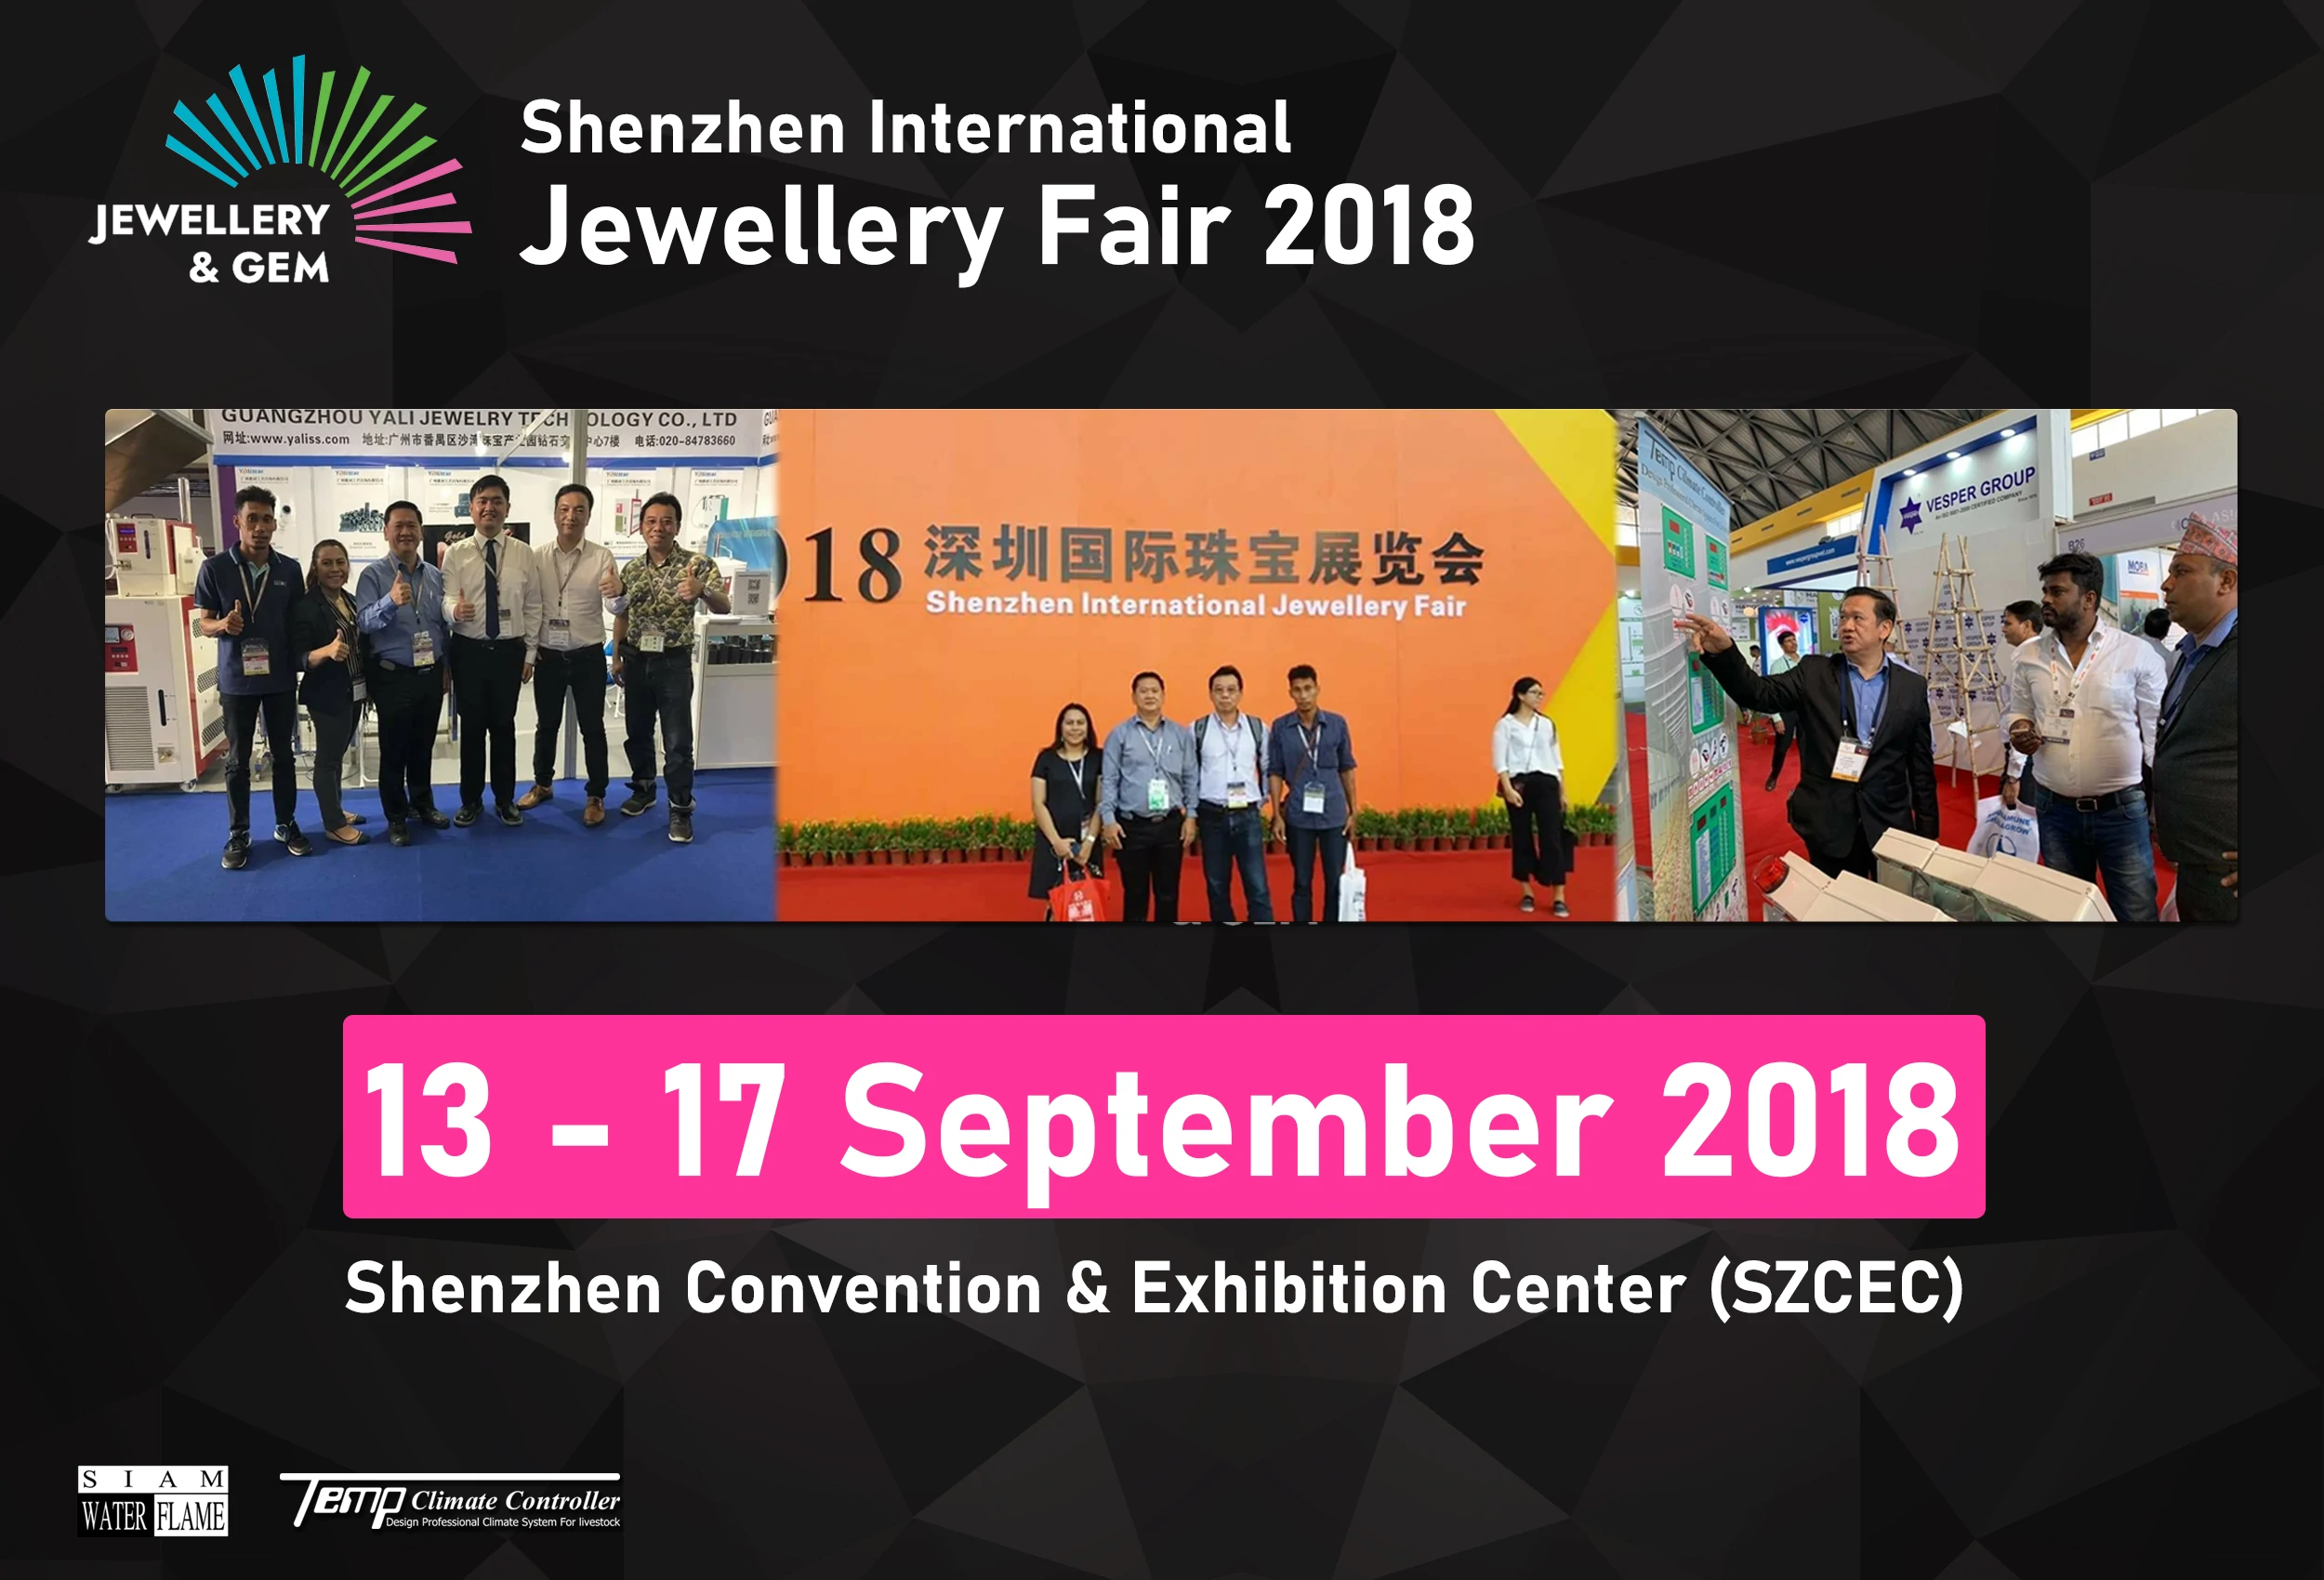 Shenzhen International Jewelry Fair 2018